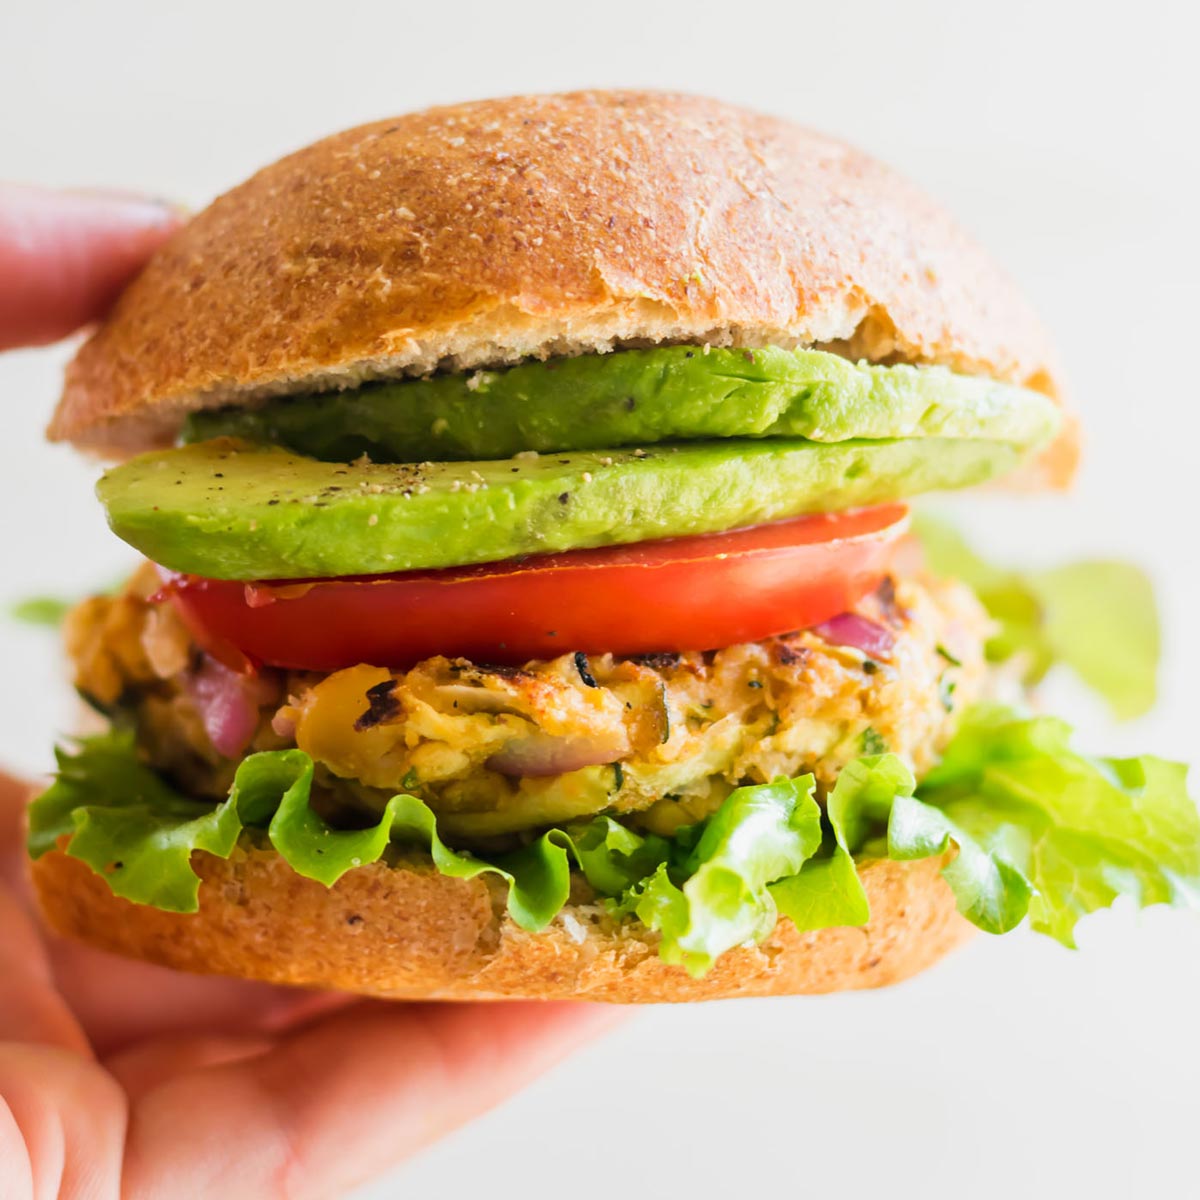 https://runningonrealfood.com/wp-content/uploads/2022/01/Best-Vegan-Chickpea-Veggie-Burger-Patties-Recipe.jpg